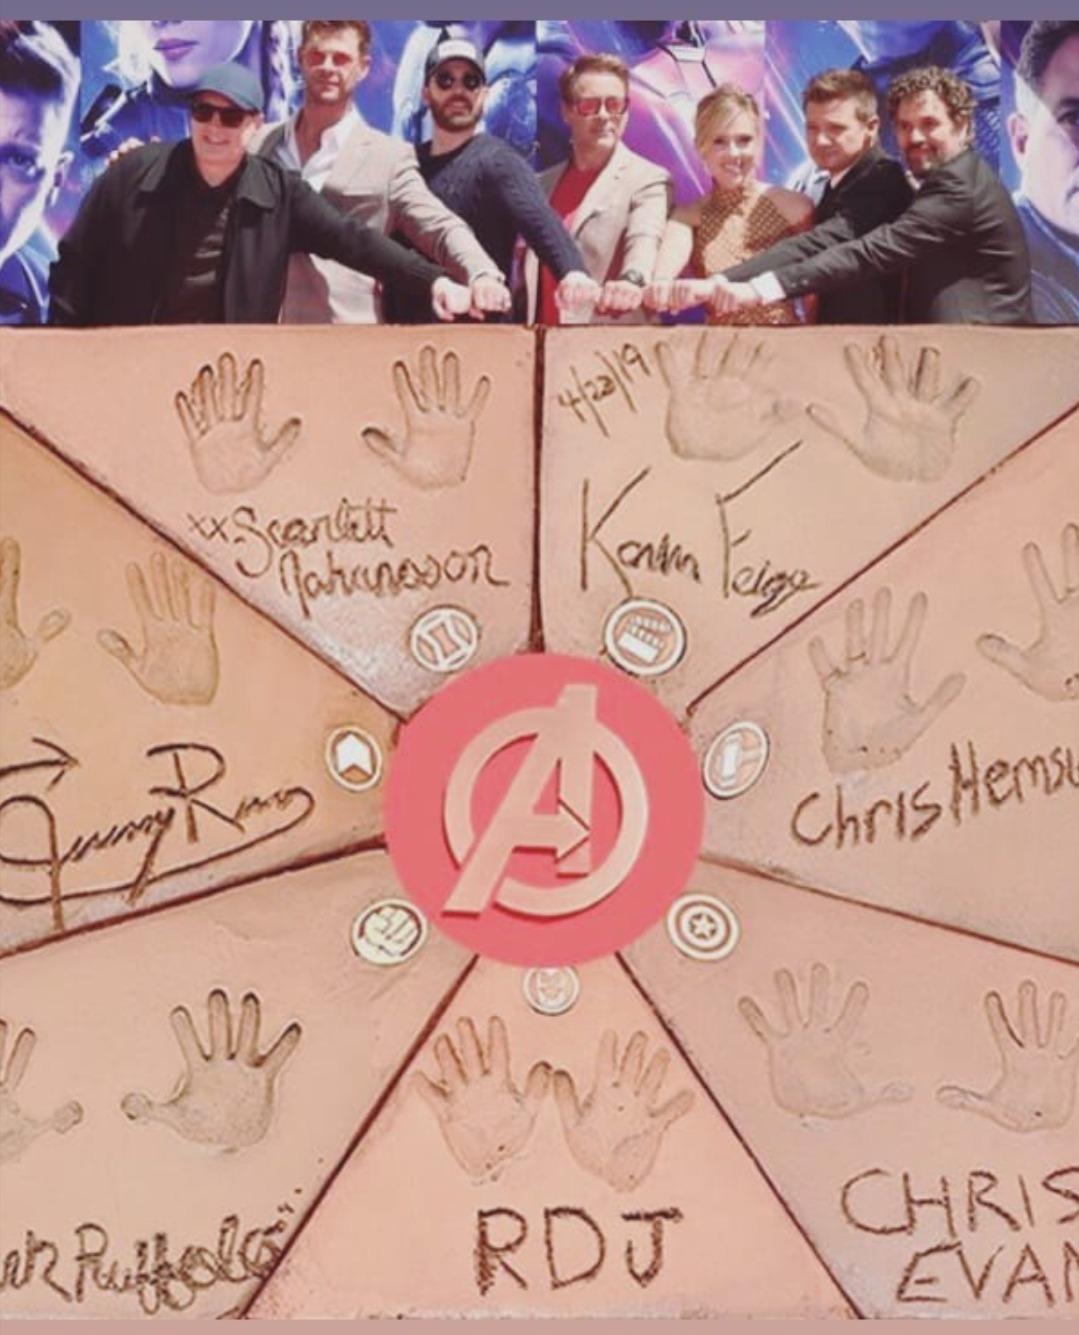 Avengers: Infinity War 1 & - 'Avengers Endgame' Cast